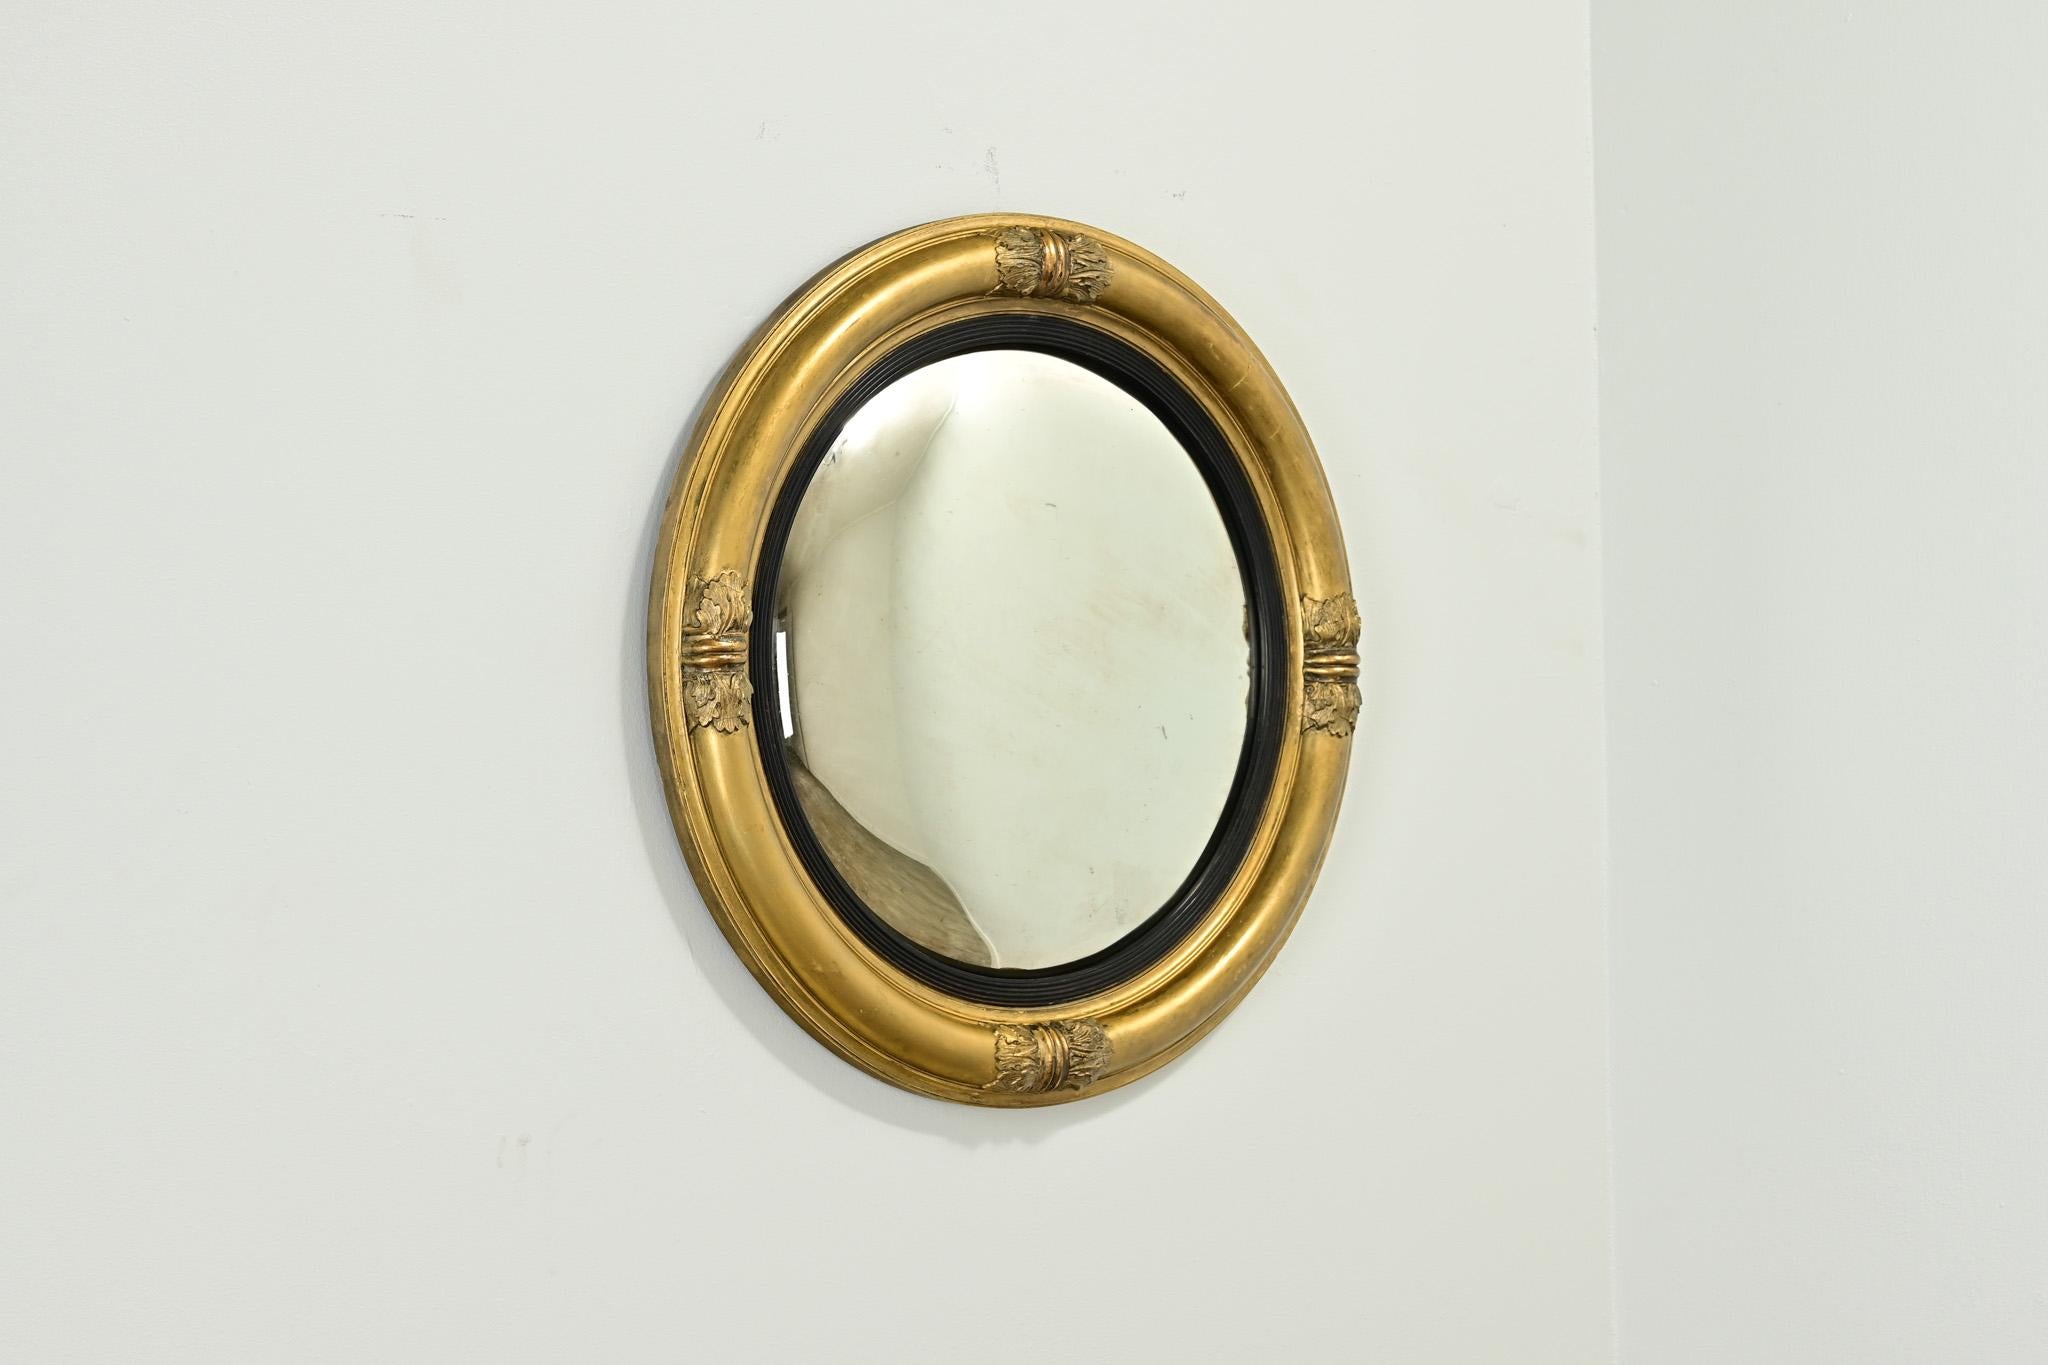 Un élégant miroir convexe anglais doré à l'or fin. La plaque de miroir convexe antique est entourée d'une garniture ébonisée et d'un cadre doré avec quatre motifs sculptés. Fixé à l'aide d'un support circulaire et prêt à être accroché dans votre